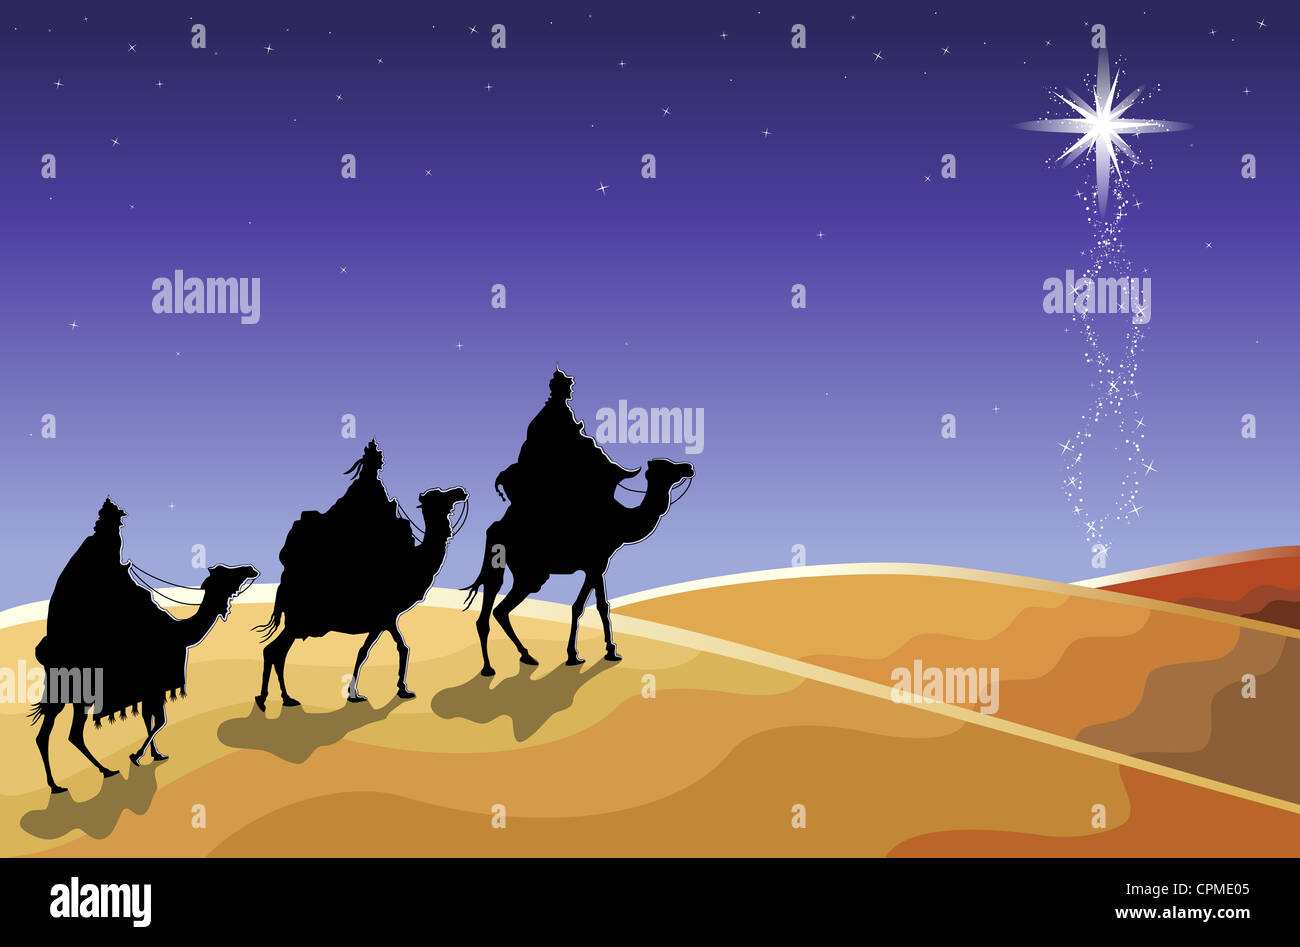 Religiöse Weihnachtskarte mit der Heiligen drei Könige, die nach der aufgehende Stern. Stockfoto